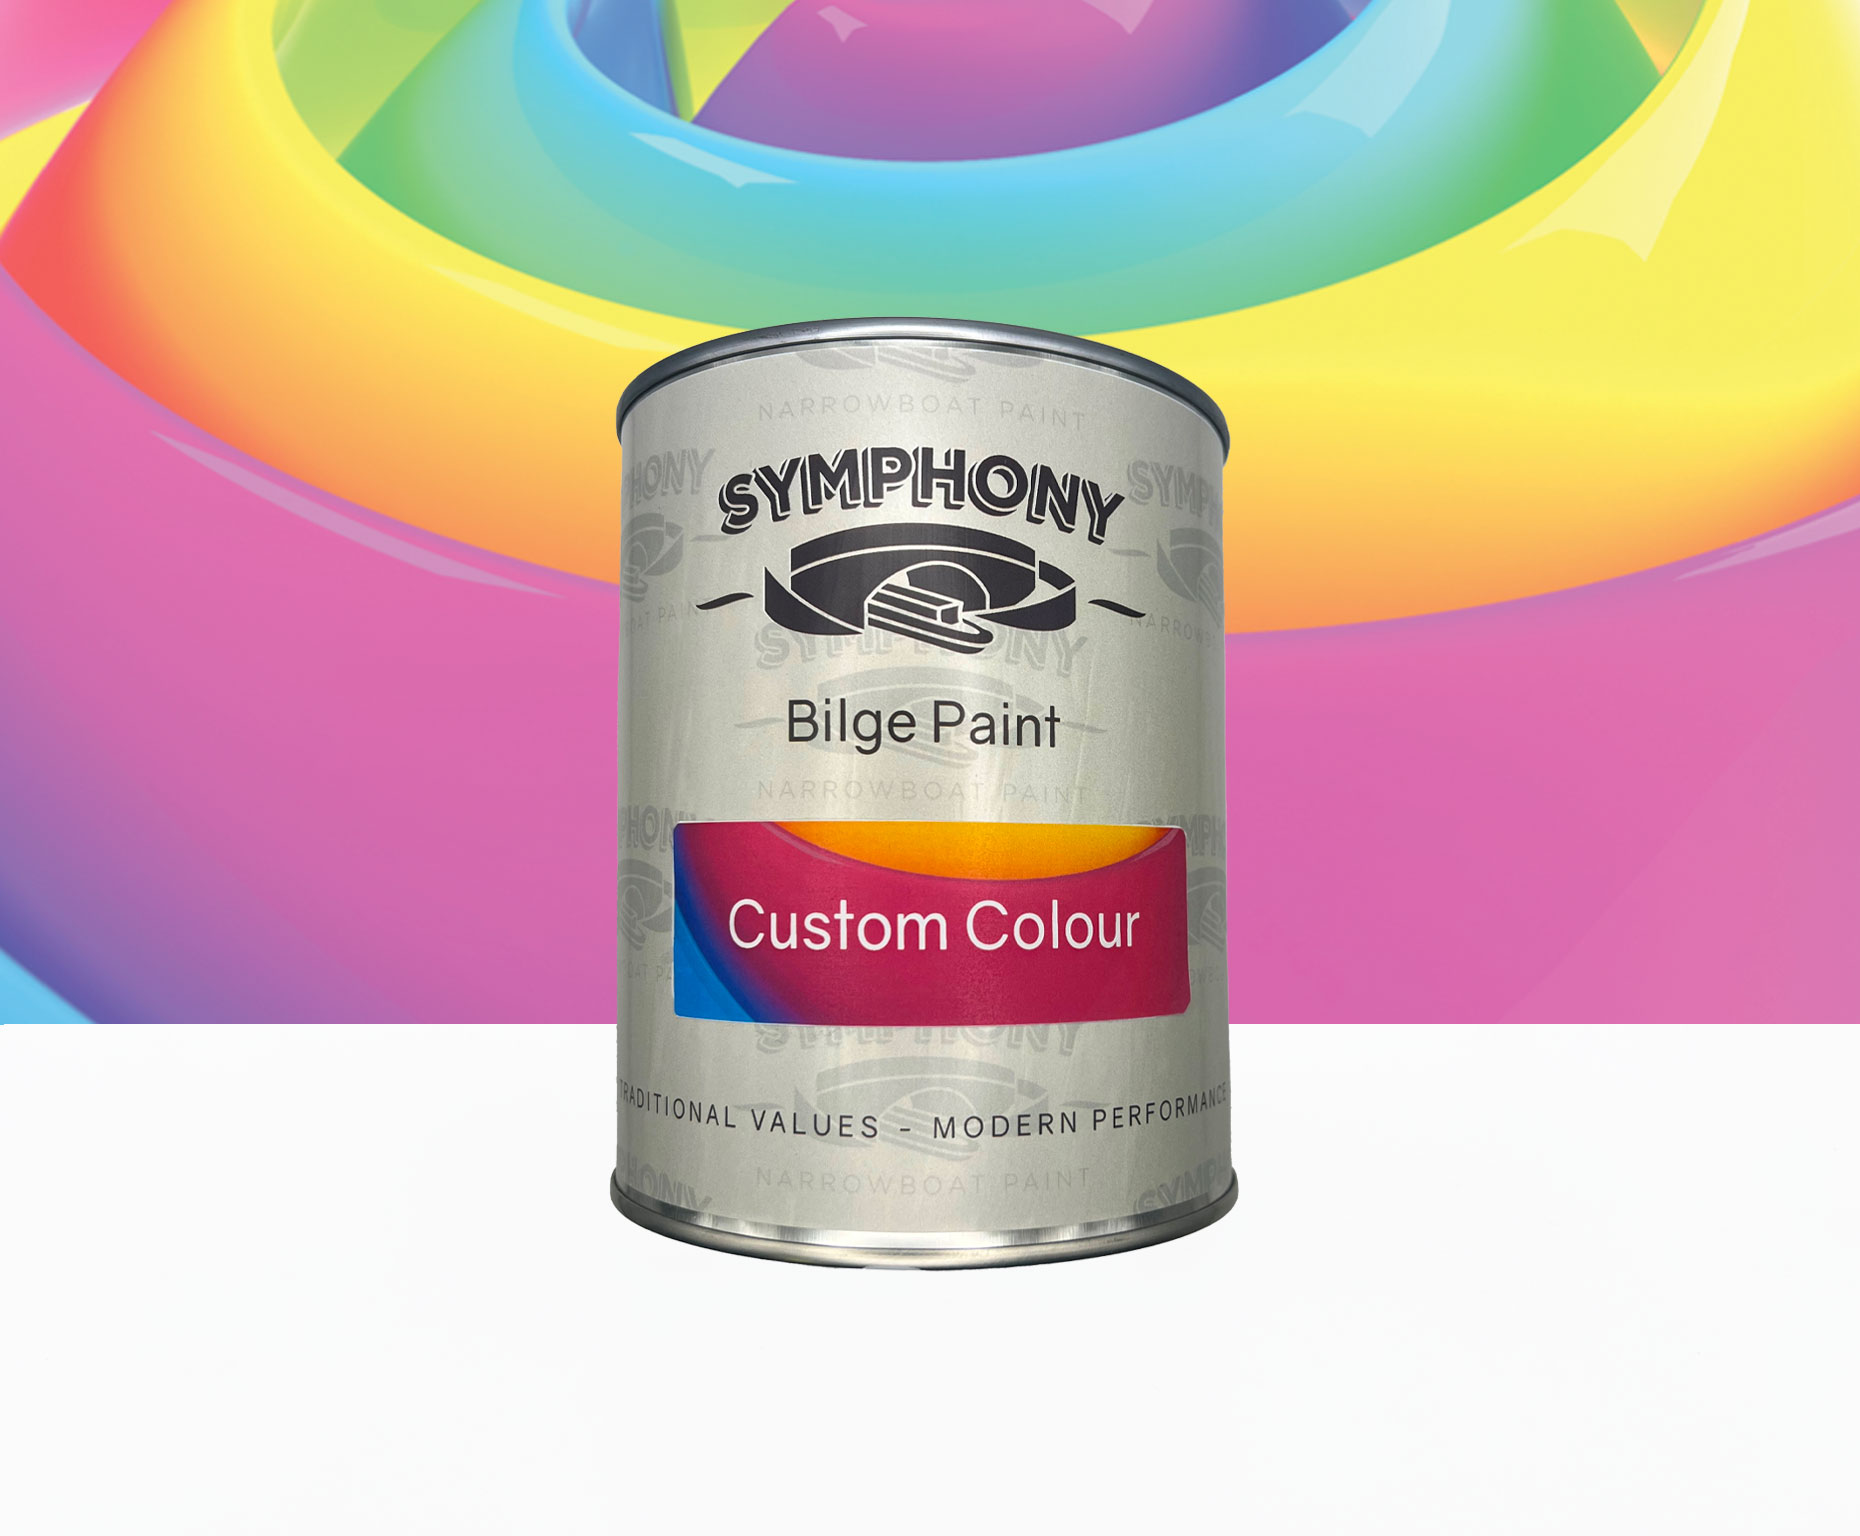 Symphony Bilge Paint - Custom Colour